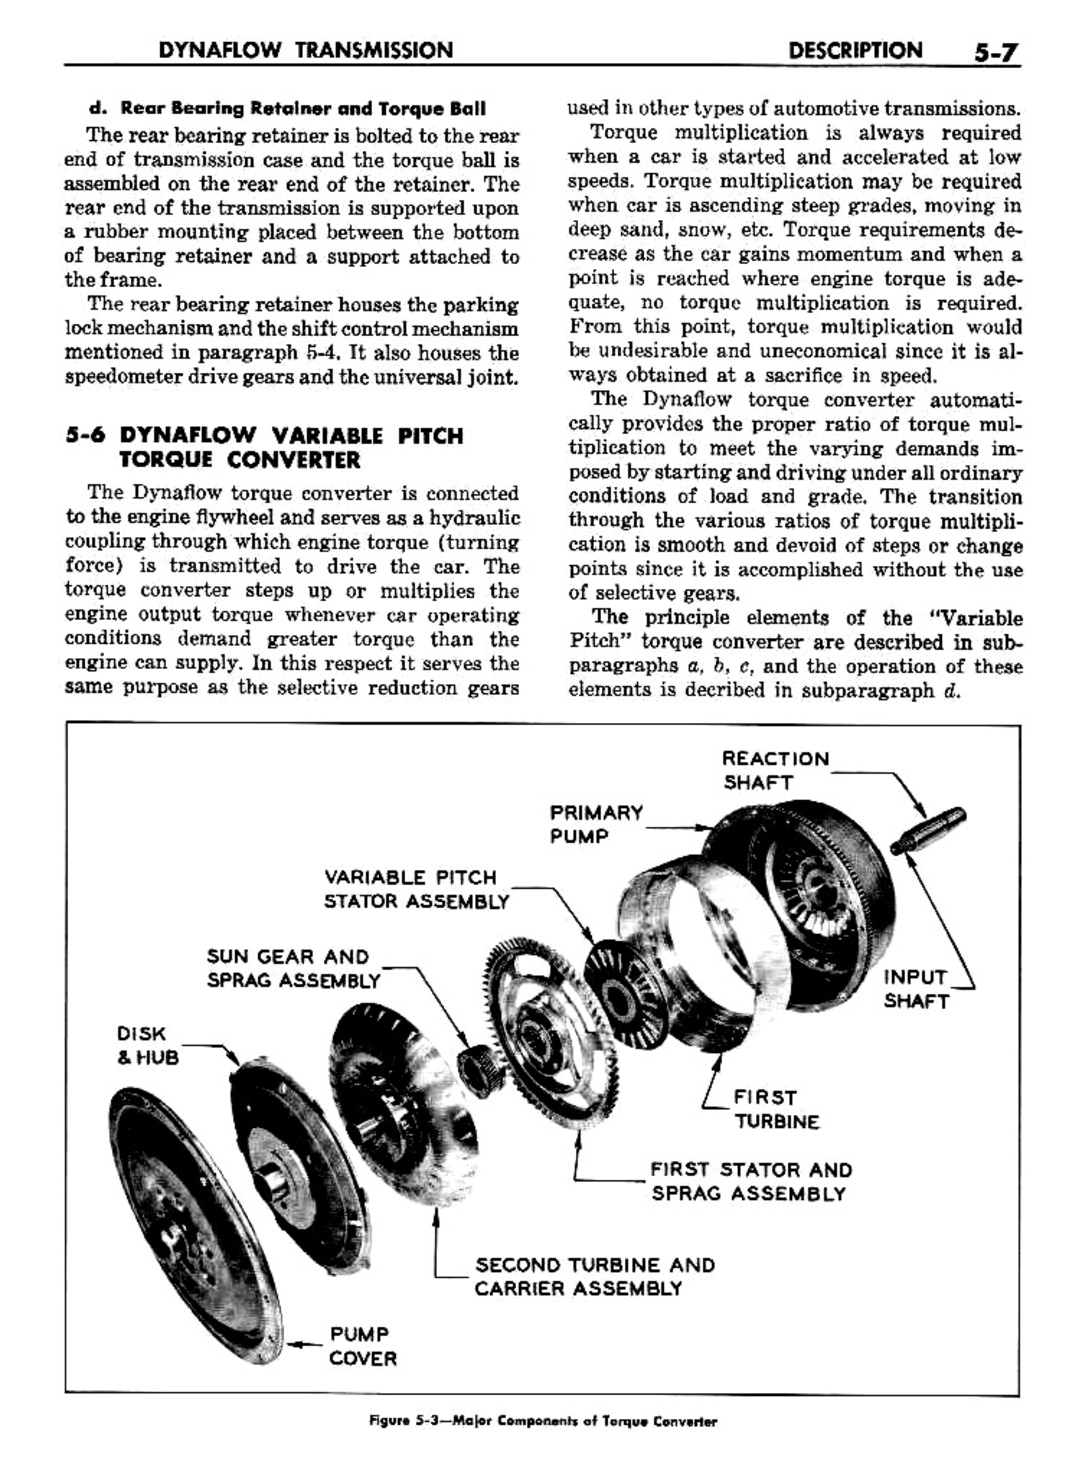 n_06 1957 Buick Shop Manual - Dynaflow-007-007.jpg